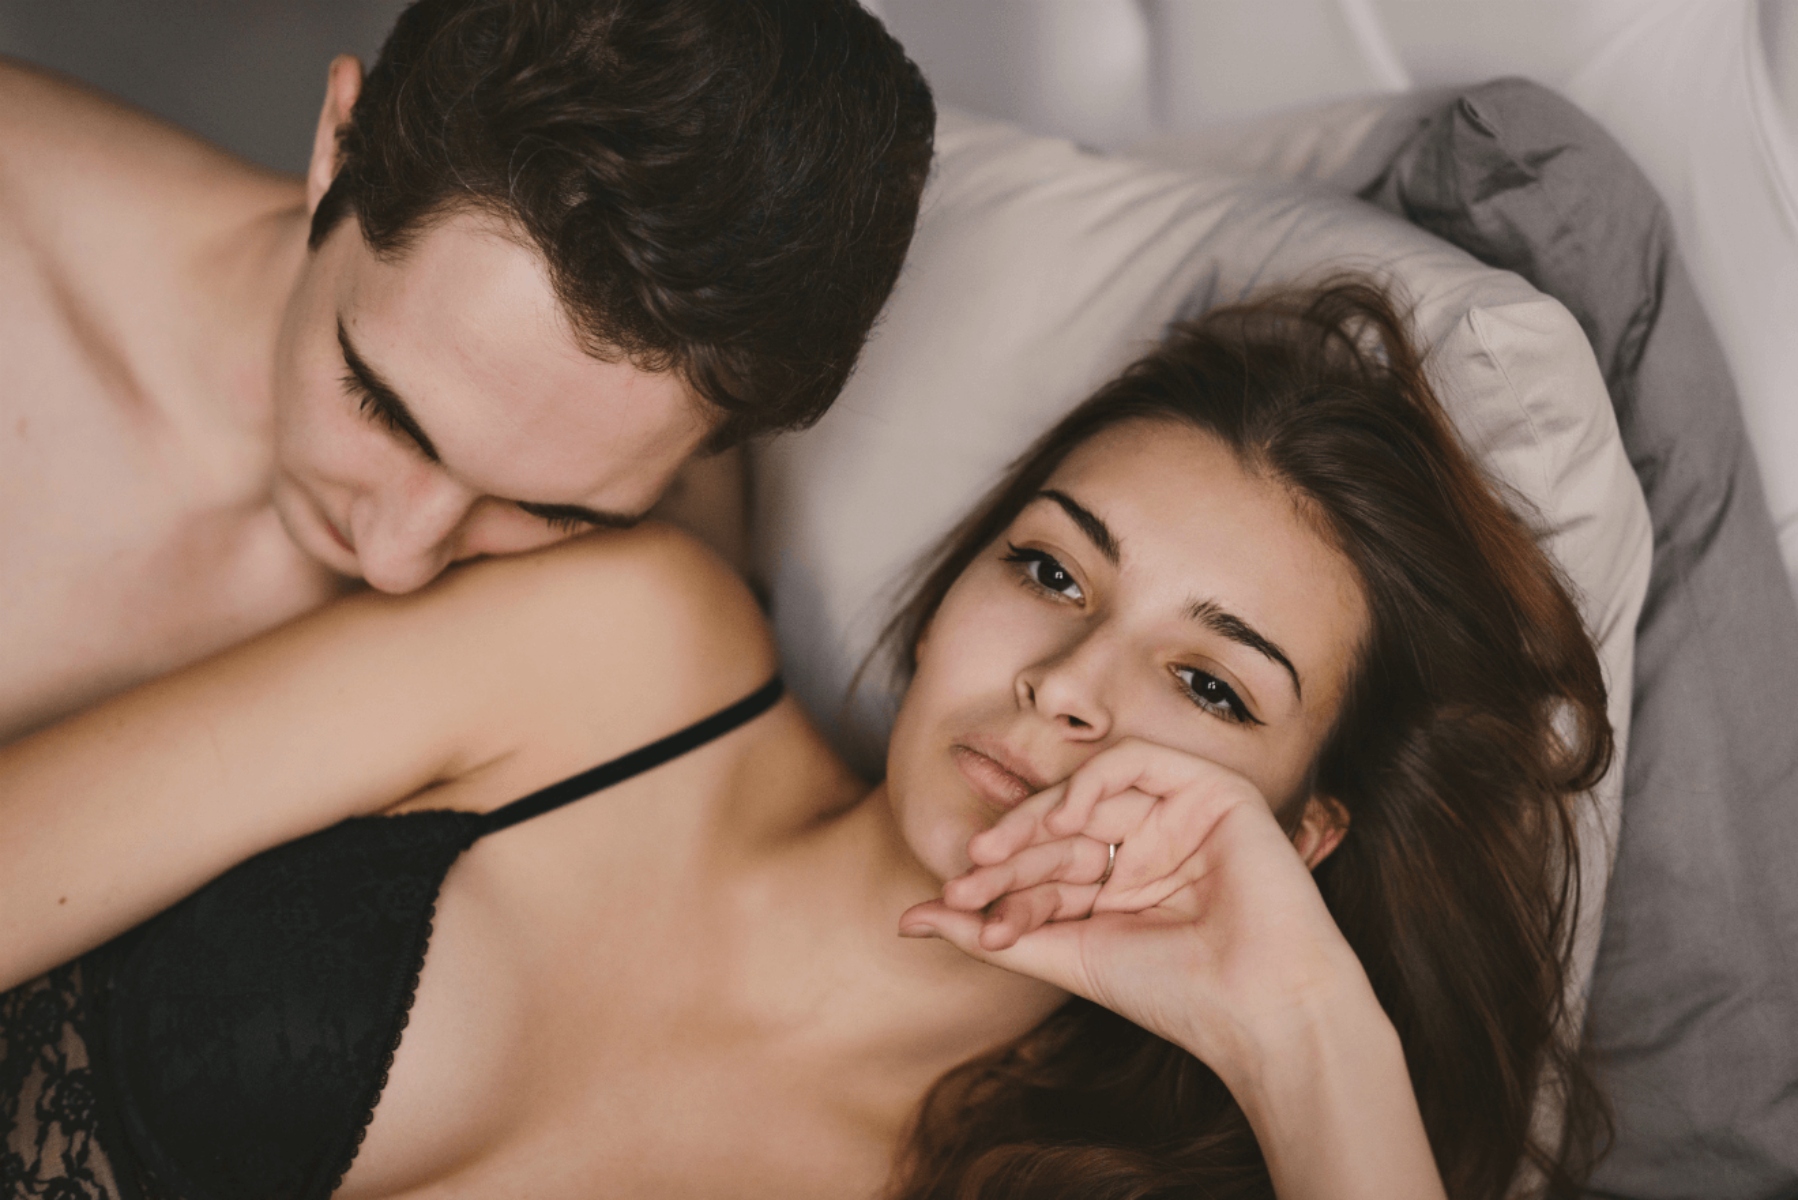 Όταν σε θέλει μόνο για σεξ: Αναγνώριση και πρακτική αντιμετώπιση